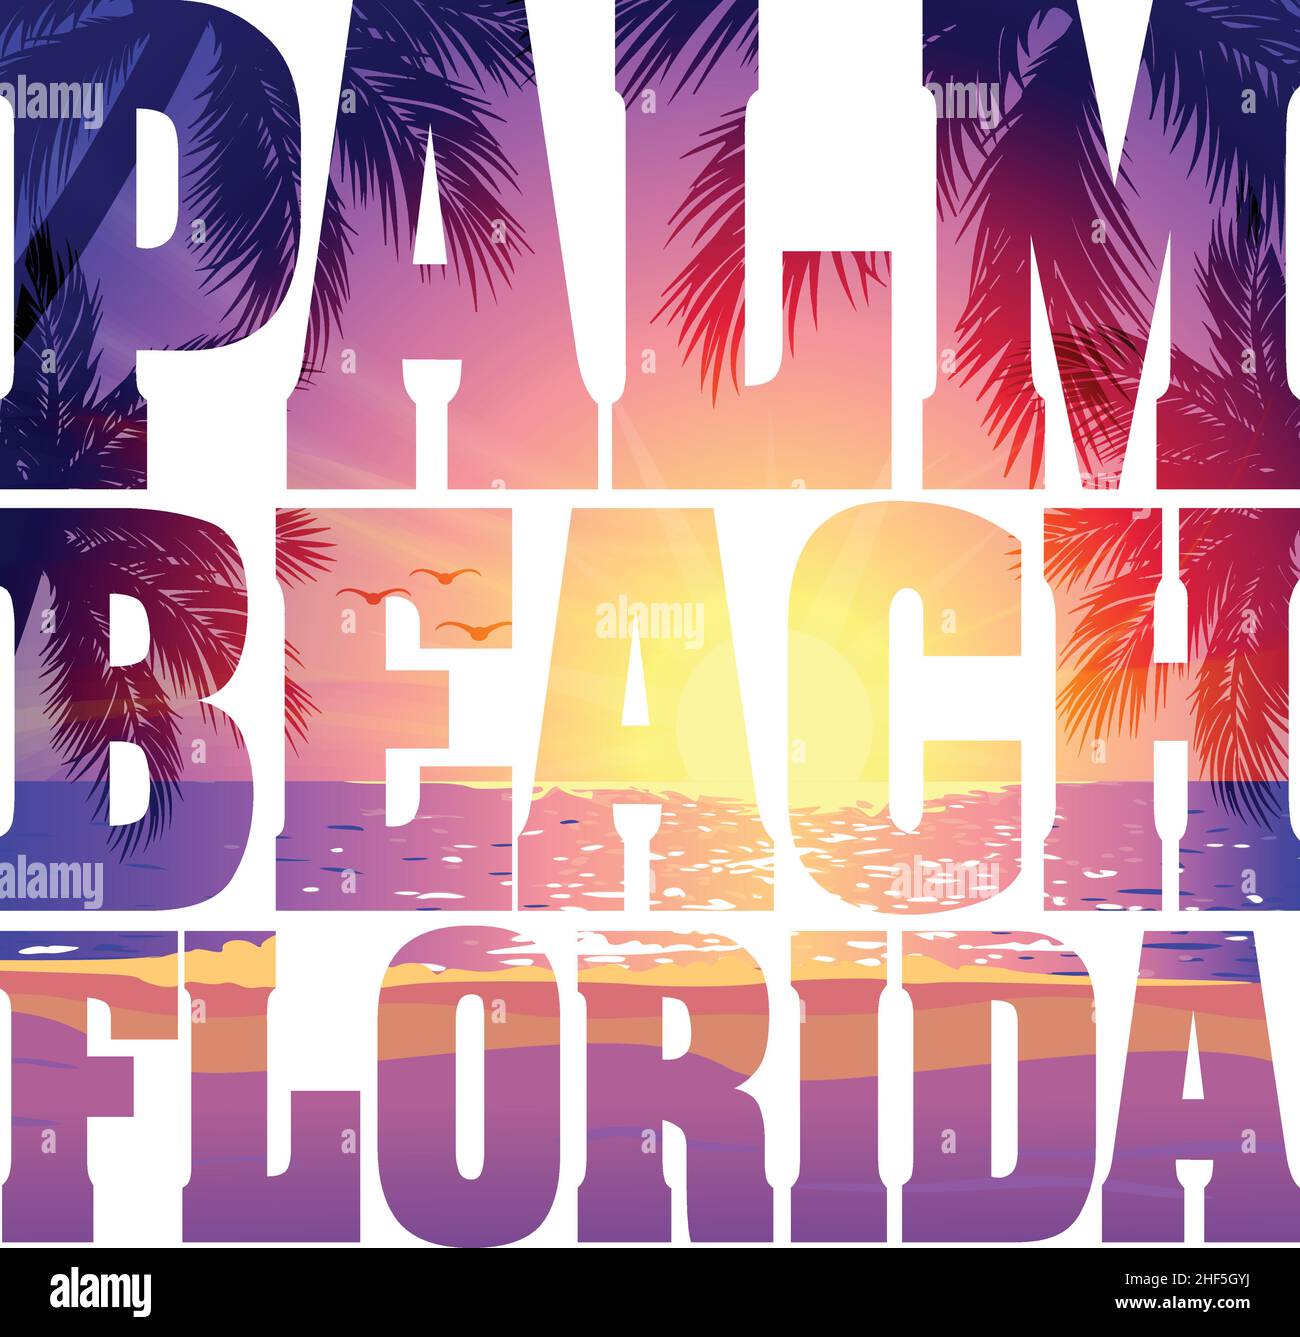 Palm Beach Florida Text mit Abend lila rosa Strand Sonnenuntergang Bild innerhalb Text T-Shirt Grafik Design isoalted auf weißem Hintergrund Stock Vektor